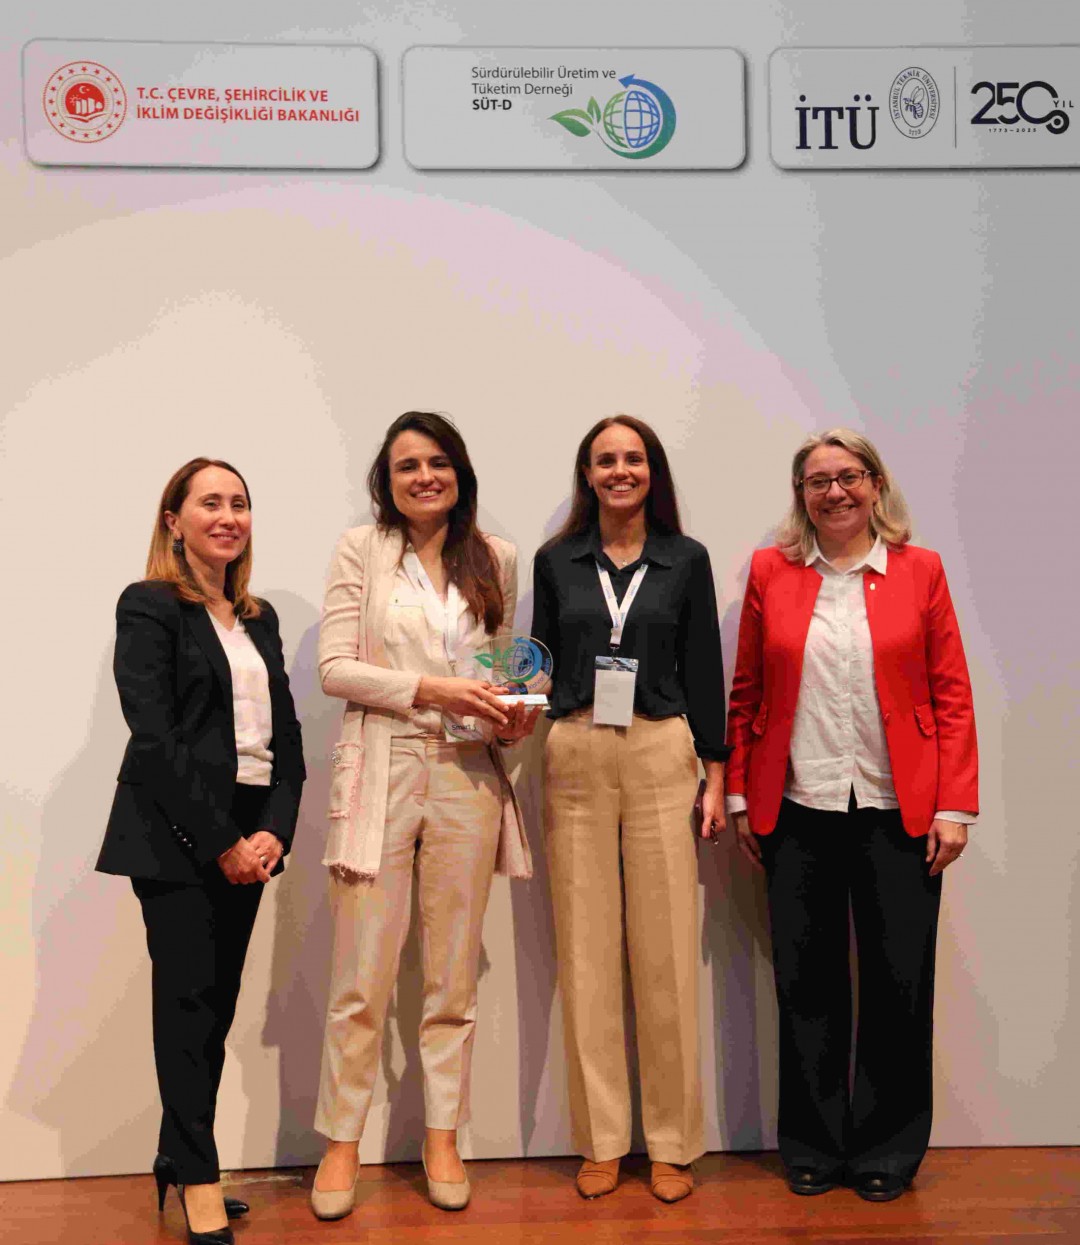 Systemair Türkiye Düşük Karbon Kahramanı Ödülü